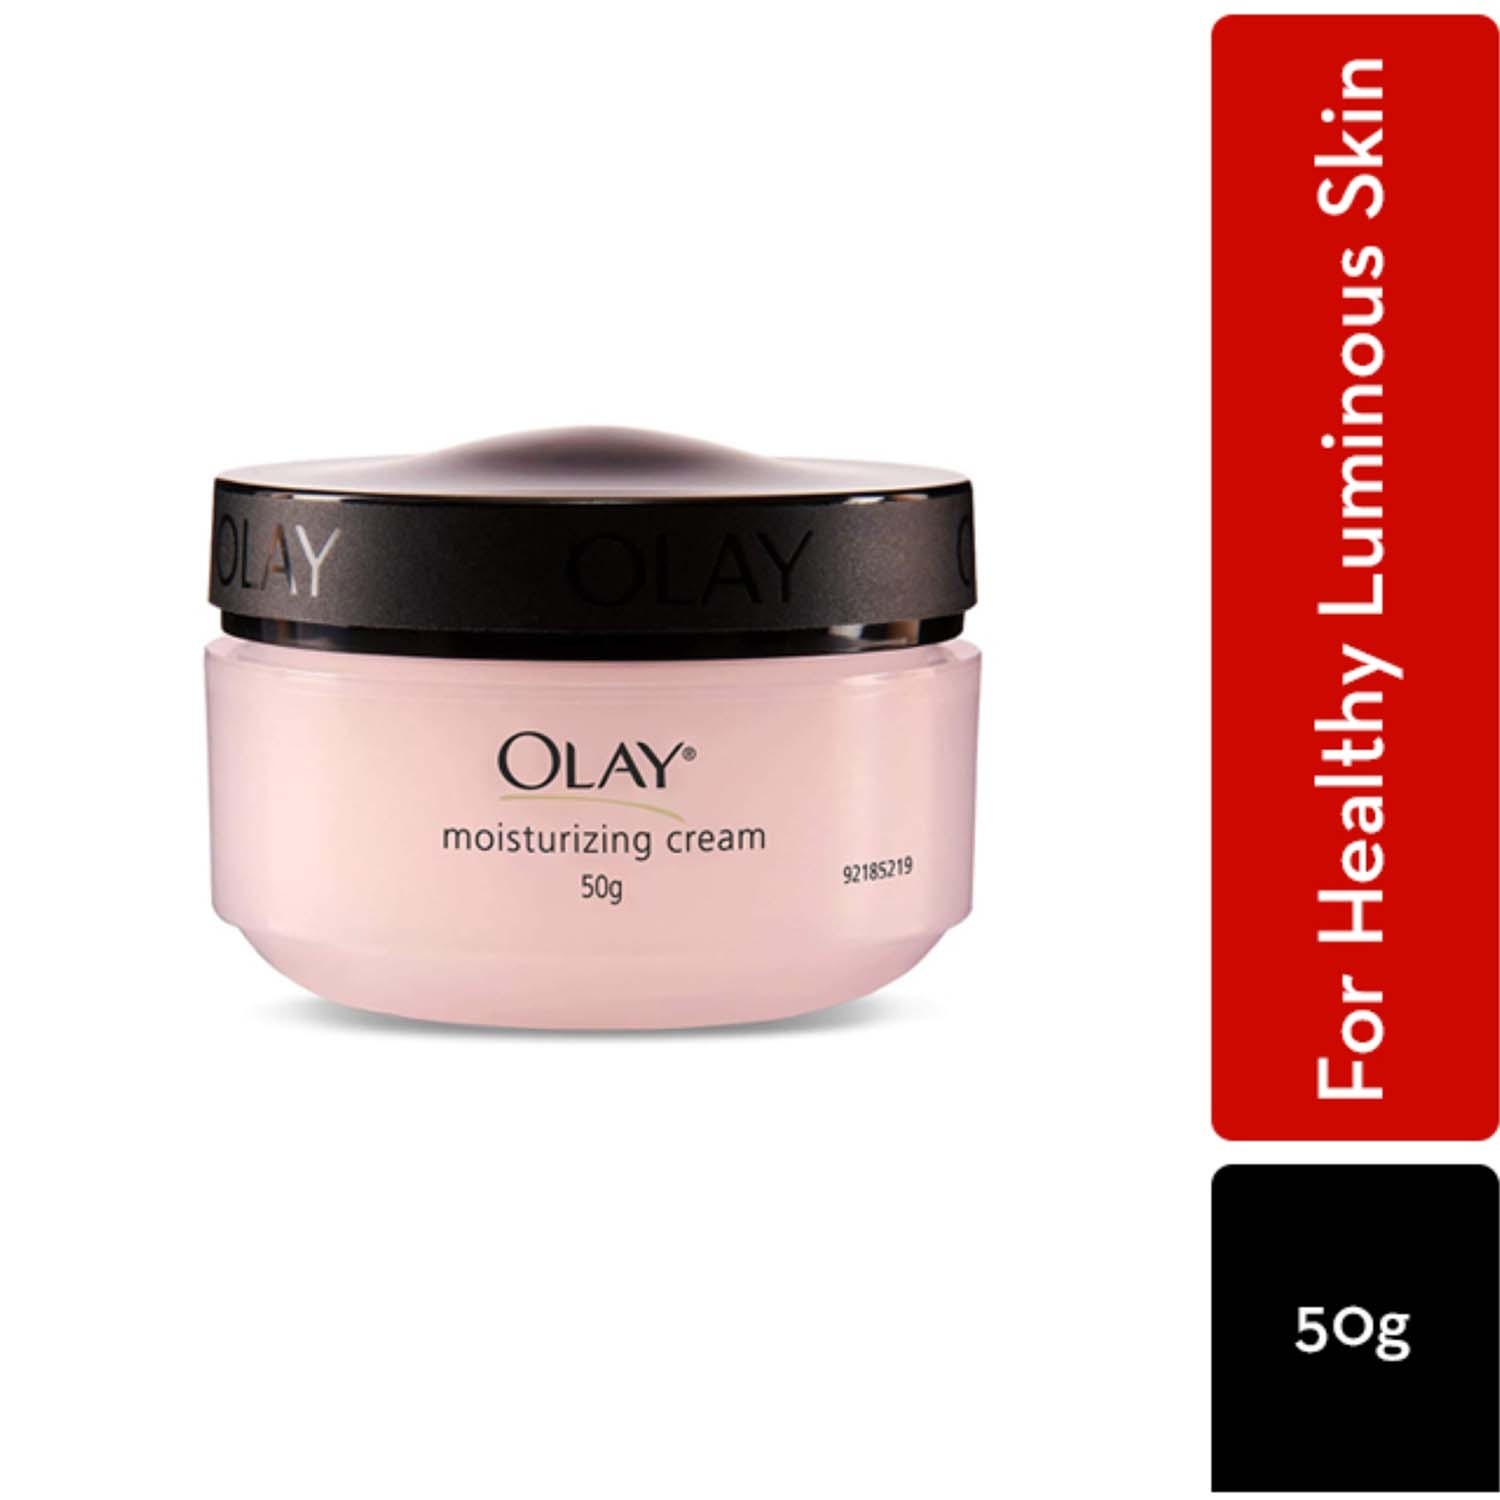 Olay | Olay All Day Moisturising Cream (50g)